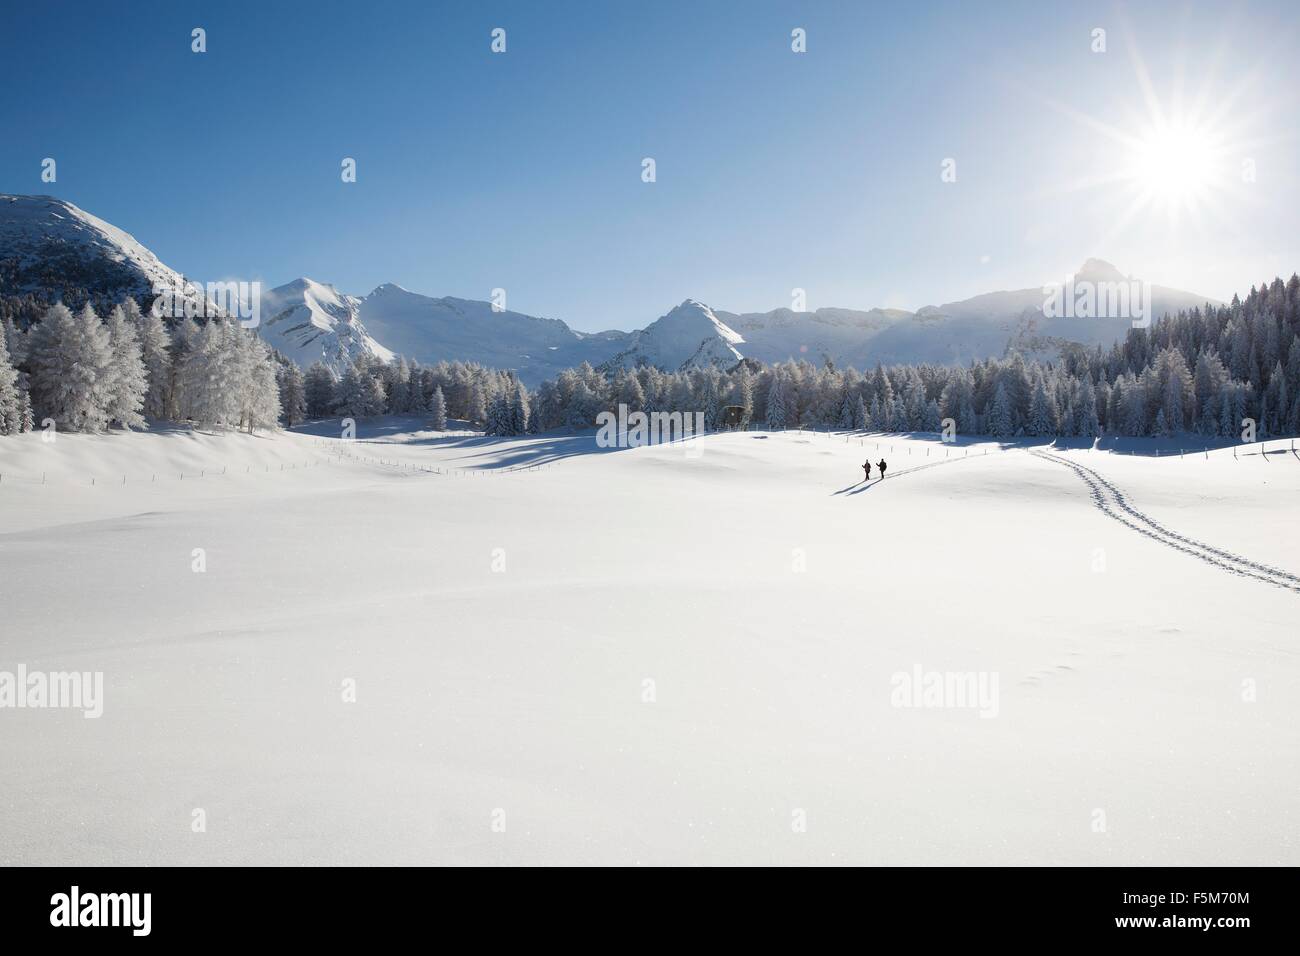 Chaîne de montagnes, arbres et senior couple loin sur paysage enneigé, Sattelbergalm, Tyrol, Autriche Banque D'Images